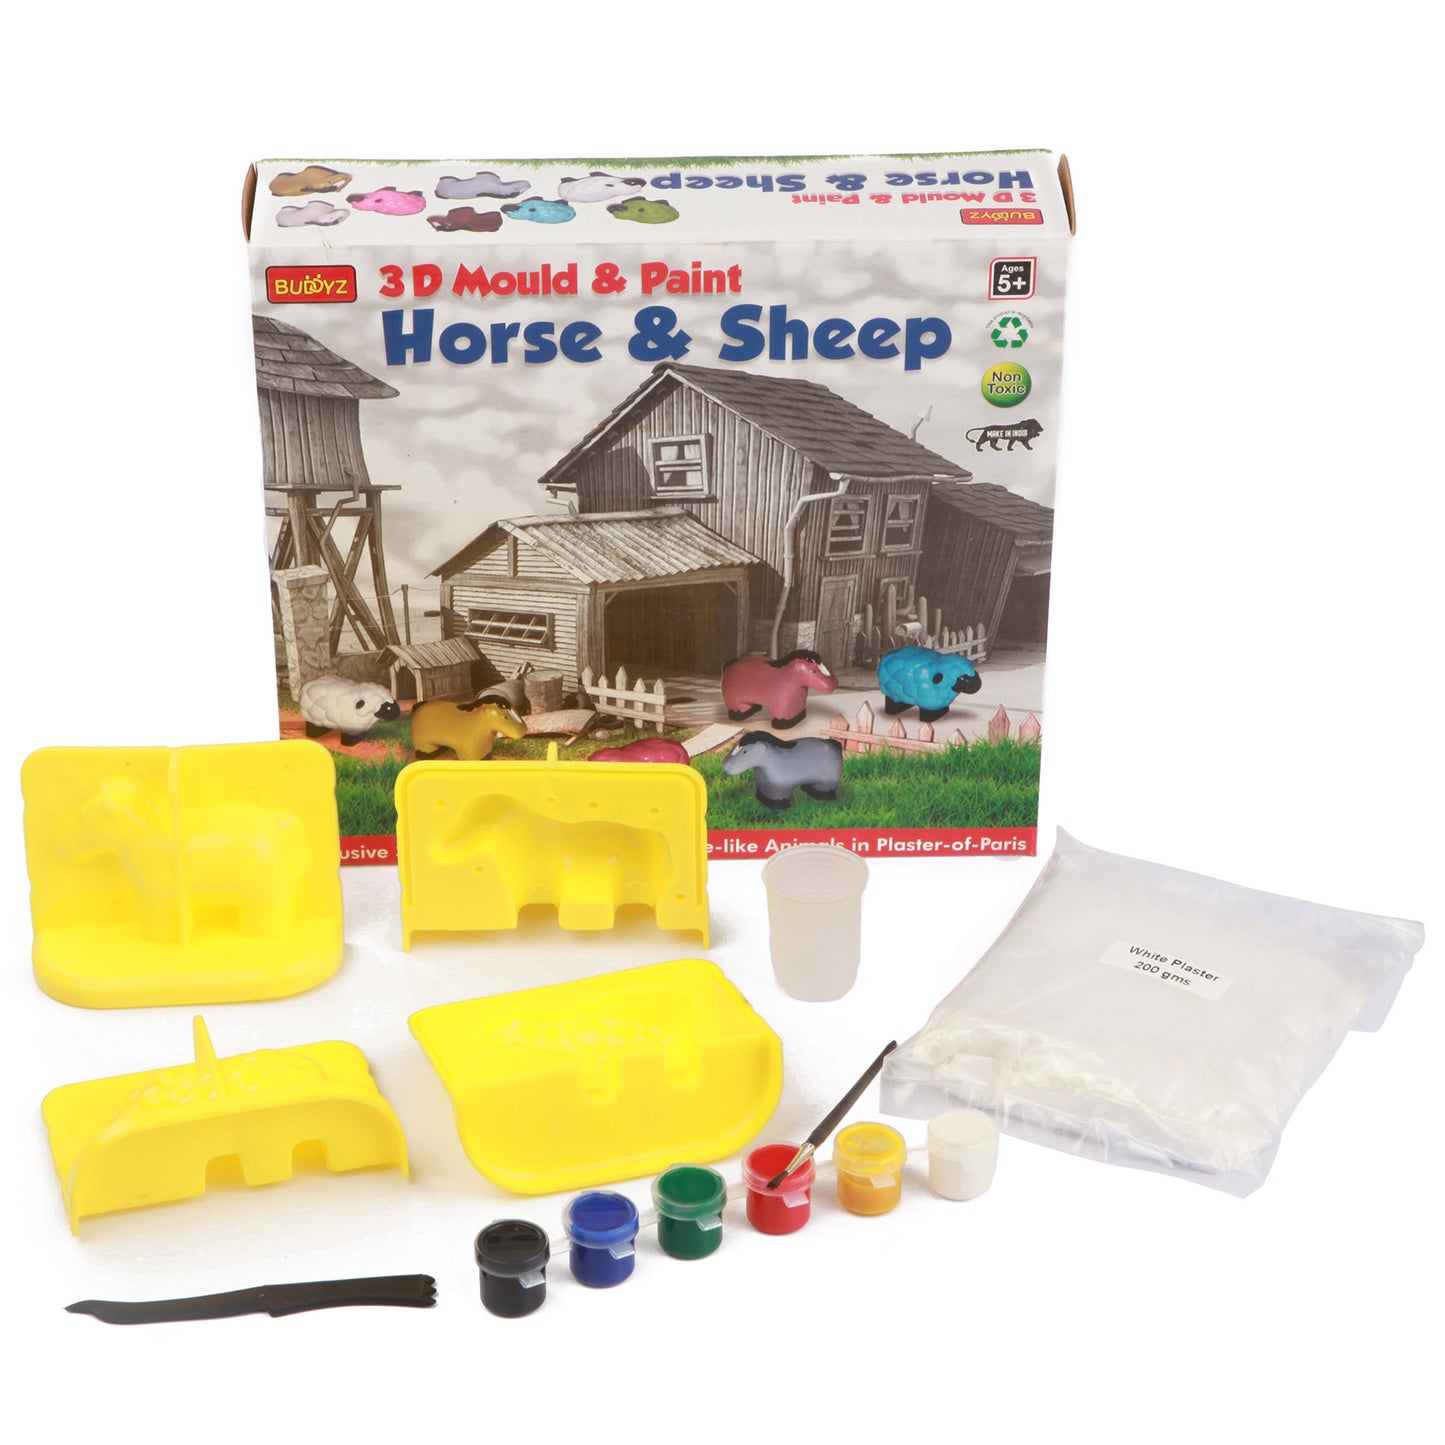 3D Mould & Paint- Horse & Sheep